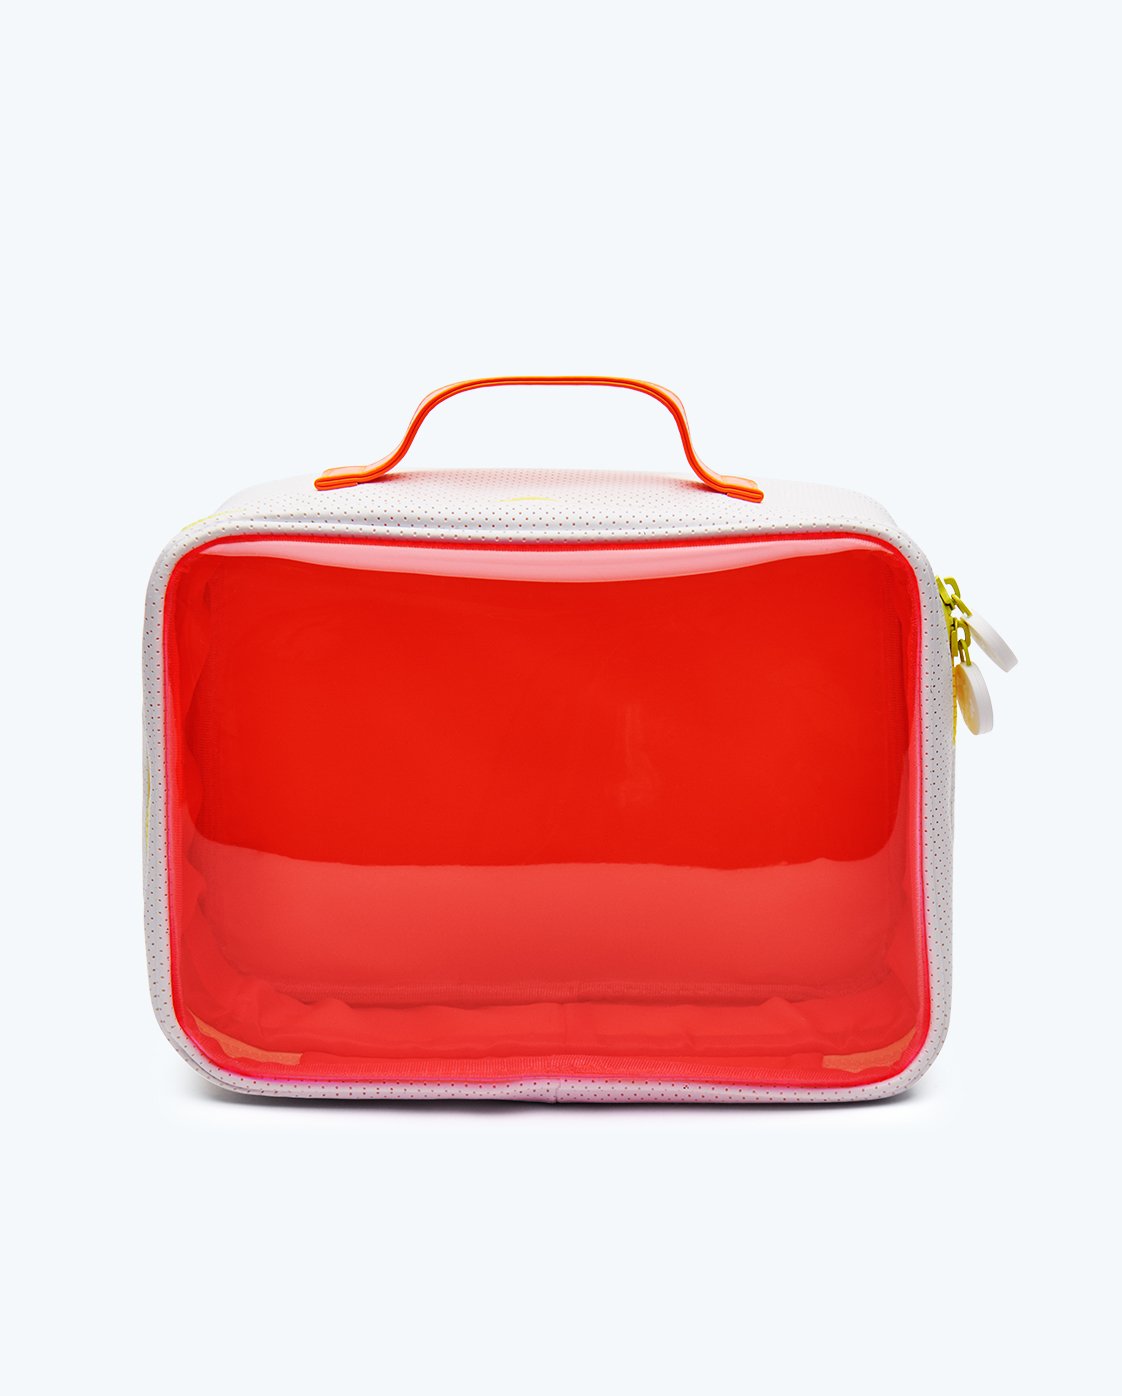 Dopp Kit  Neon Orange and White Toiletries Bag